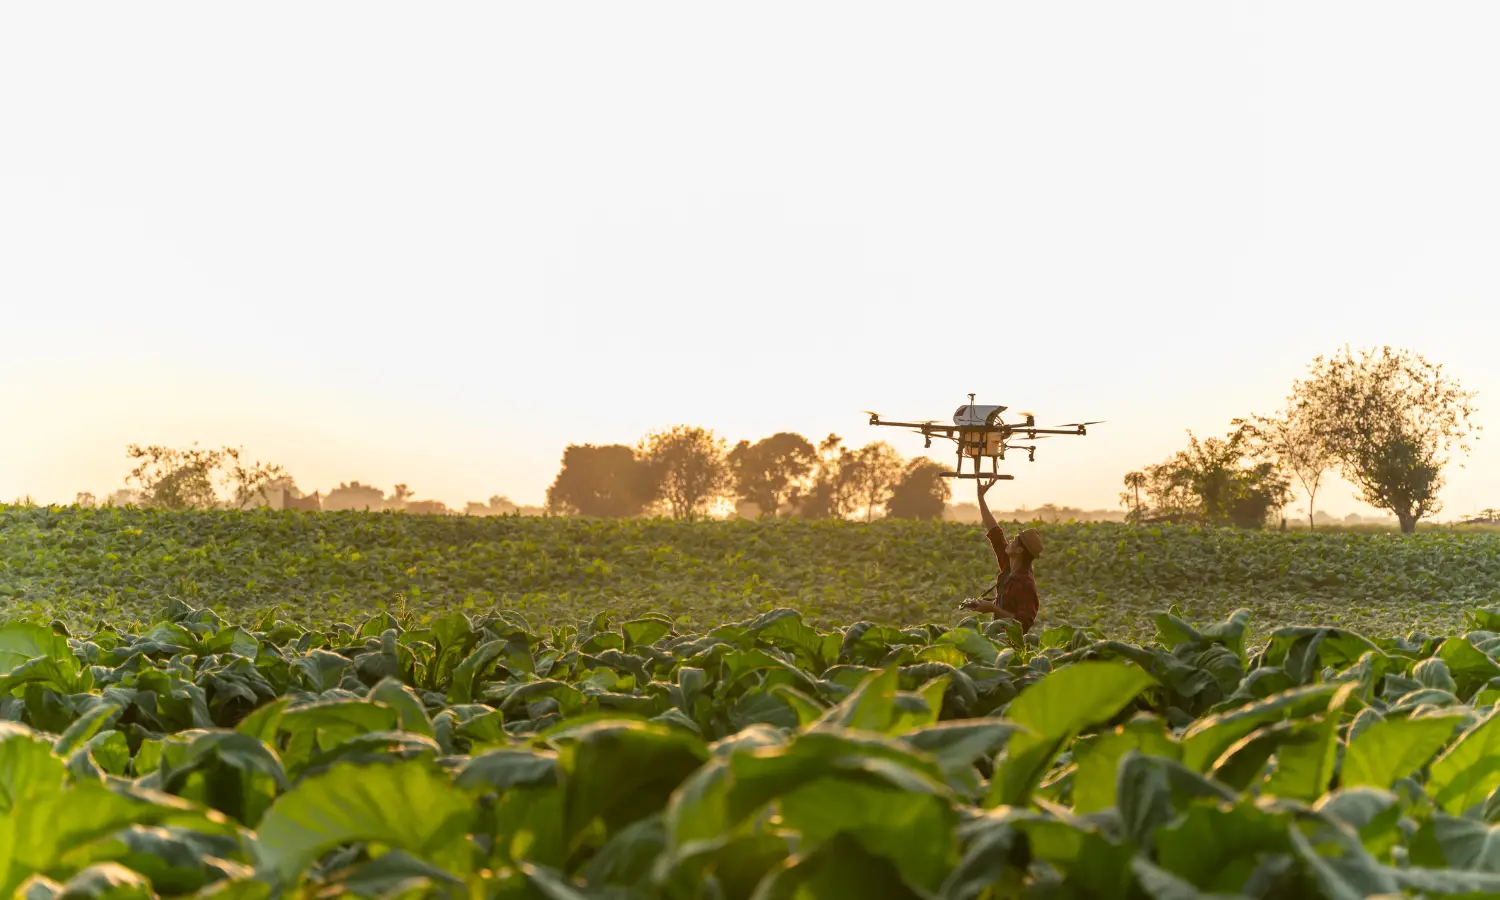 Especialista em monitoramento de plantas daninhas avaliando índice de vegetação na lavoura com drone via NDVI